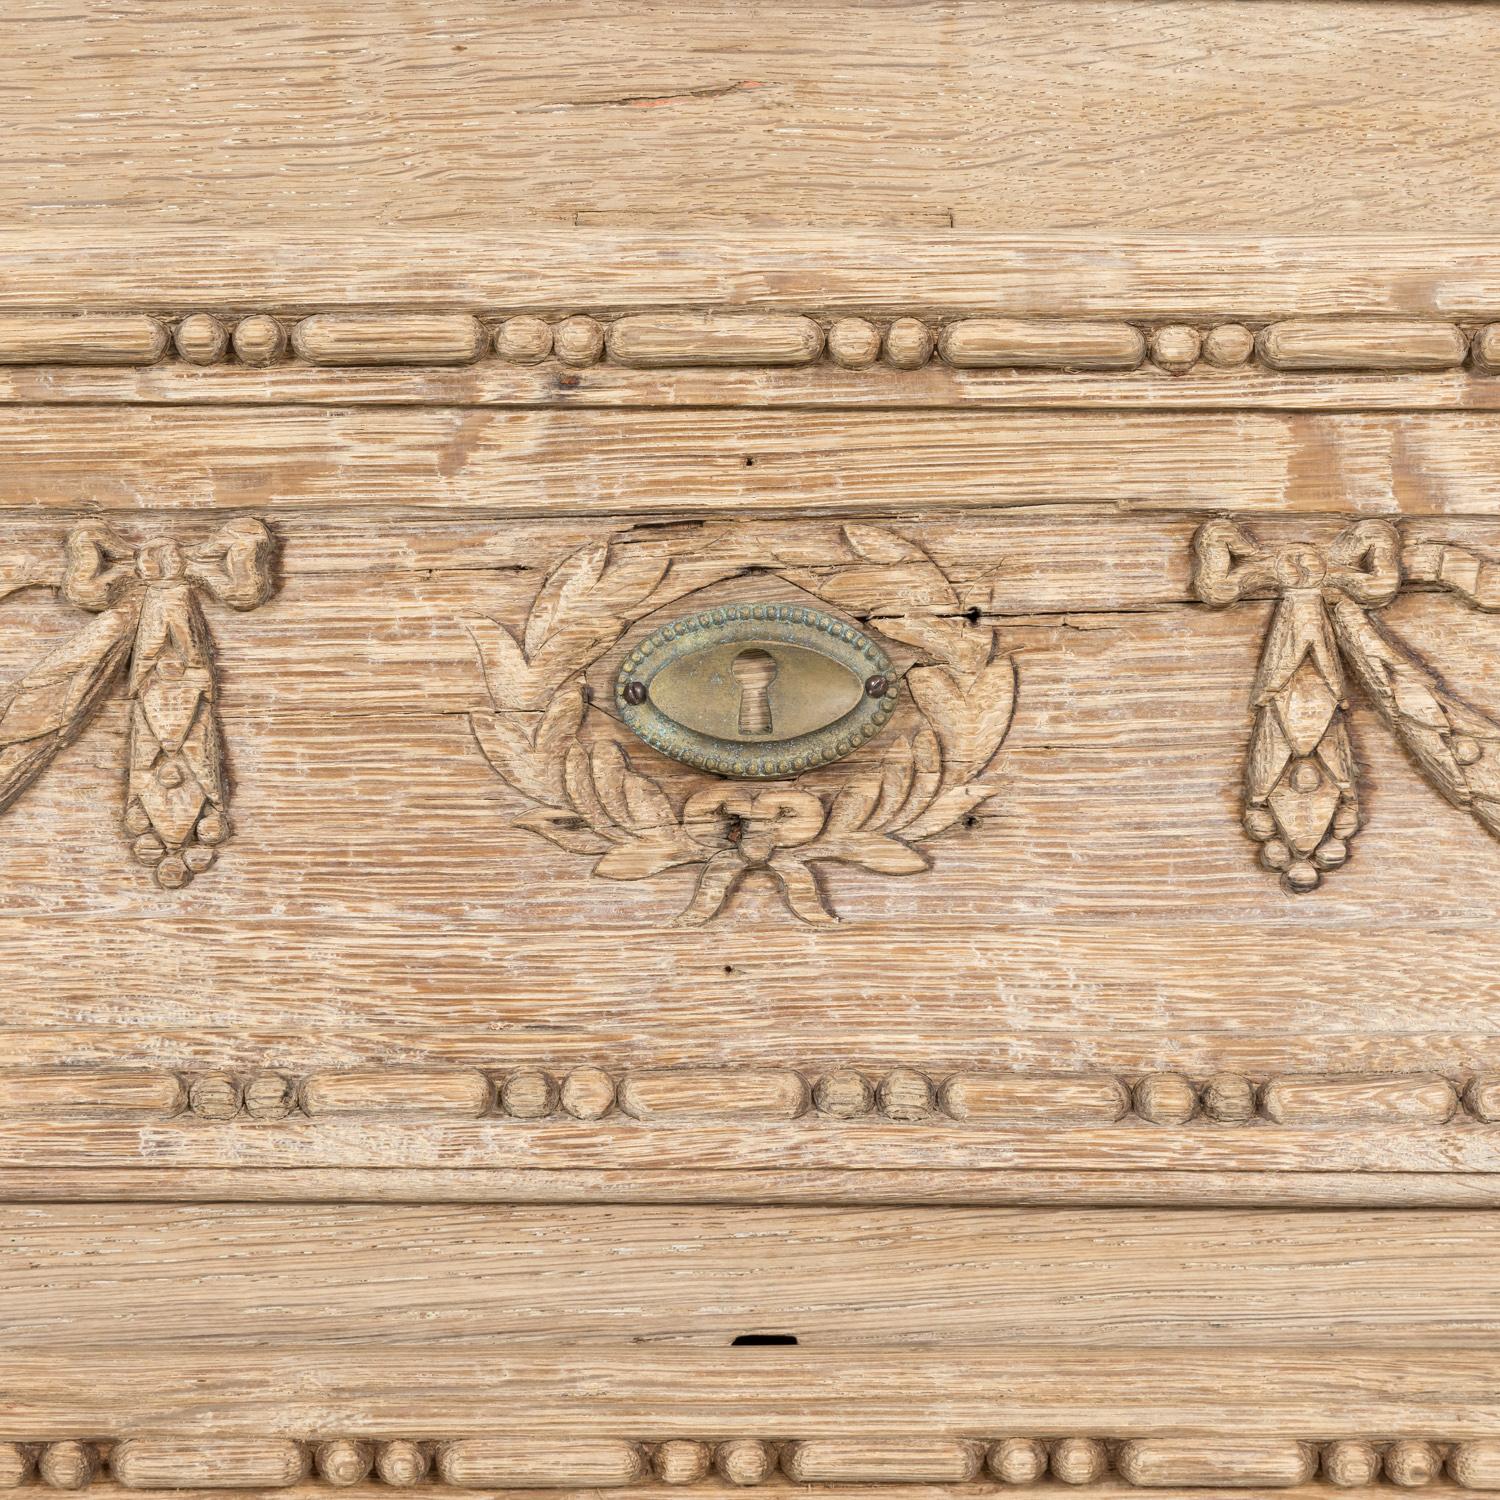 Laiton Commode provençale en chêne blanchi du début du XIXe siècle de style Louis XVI français